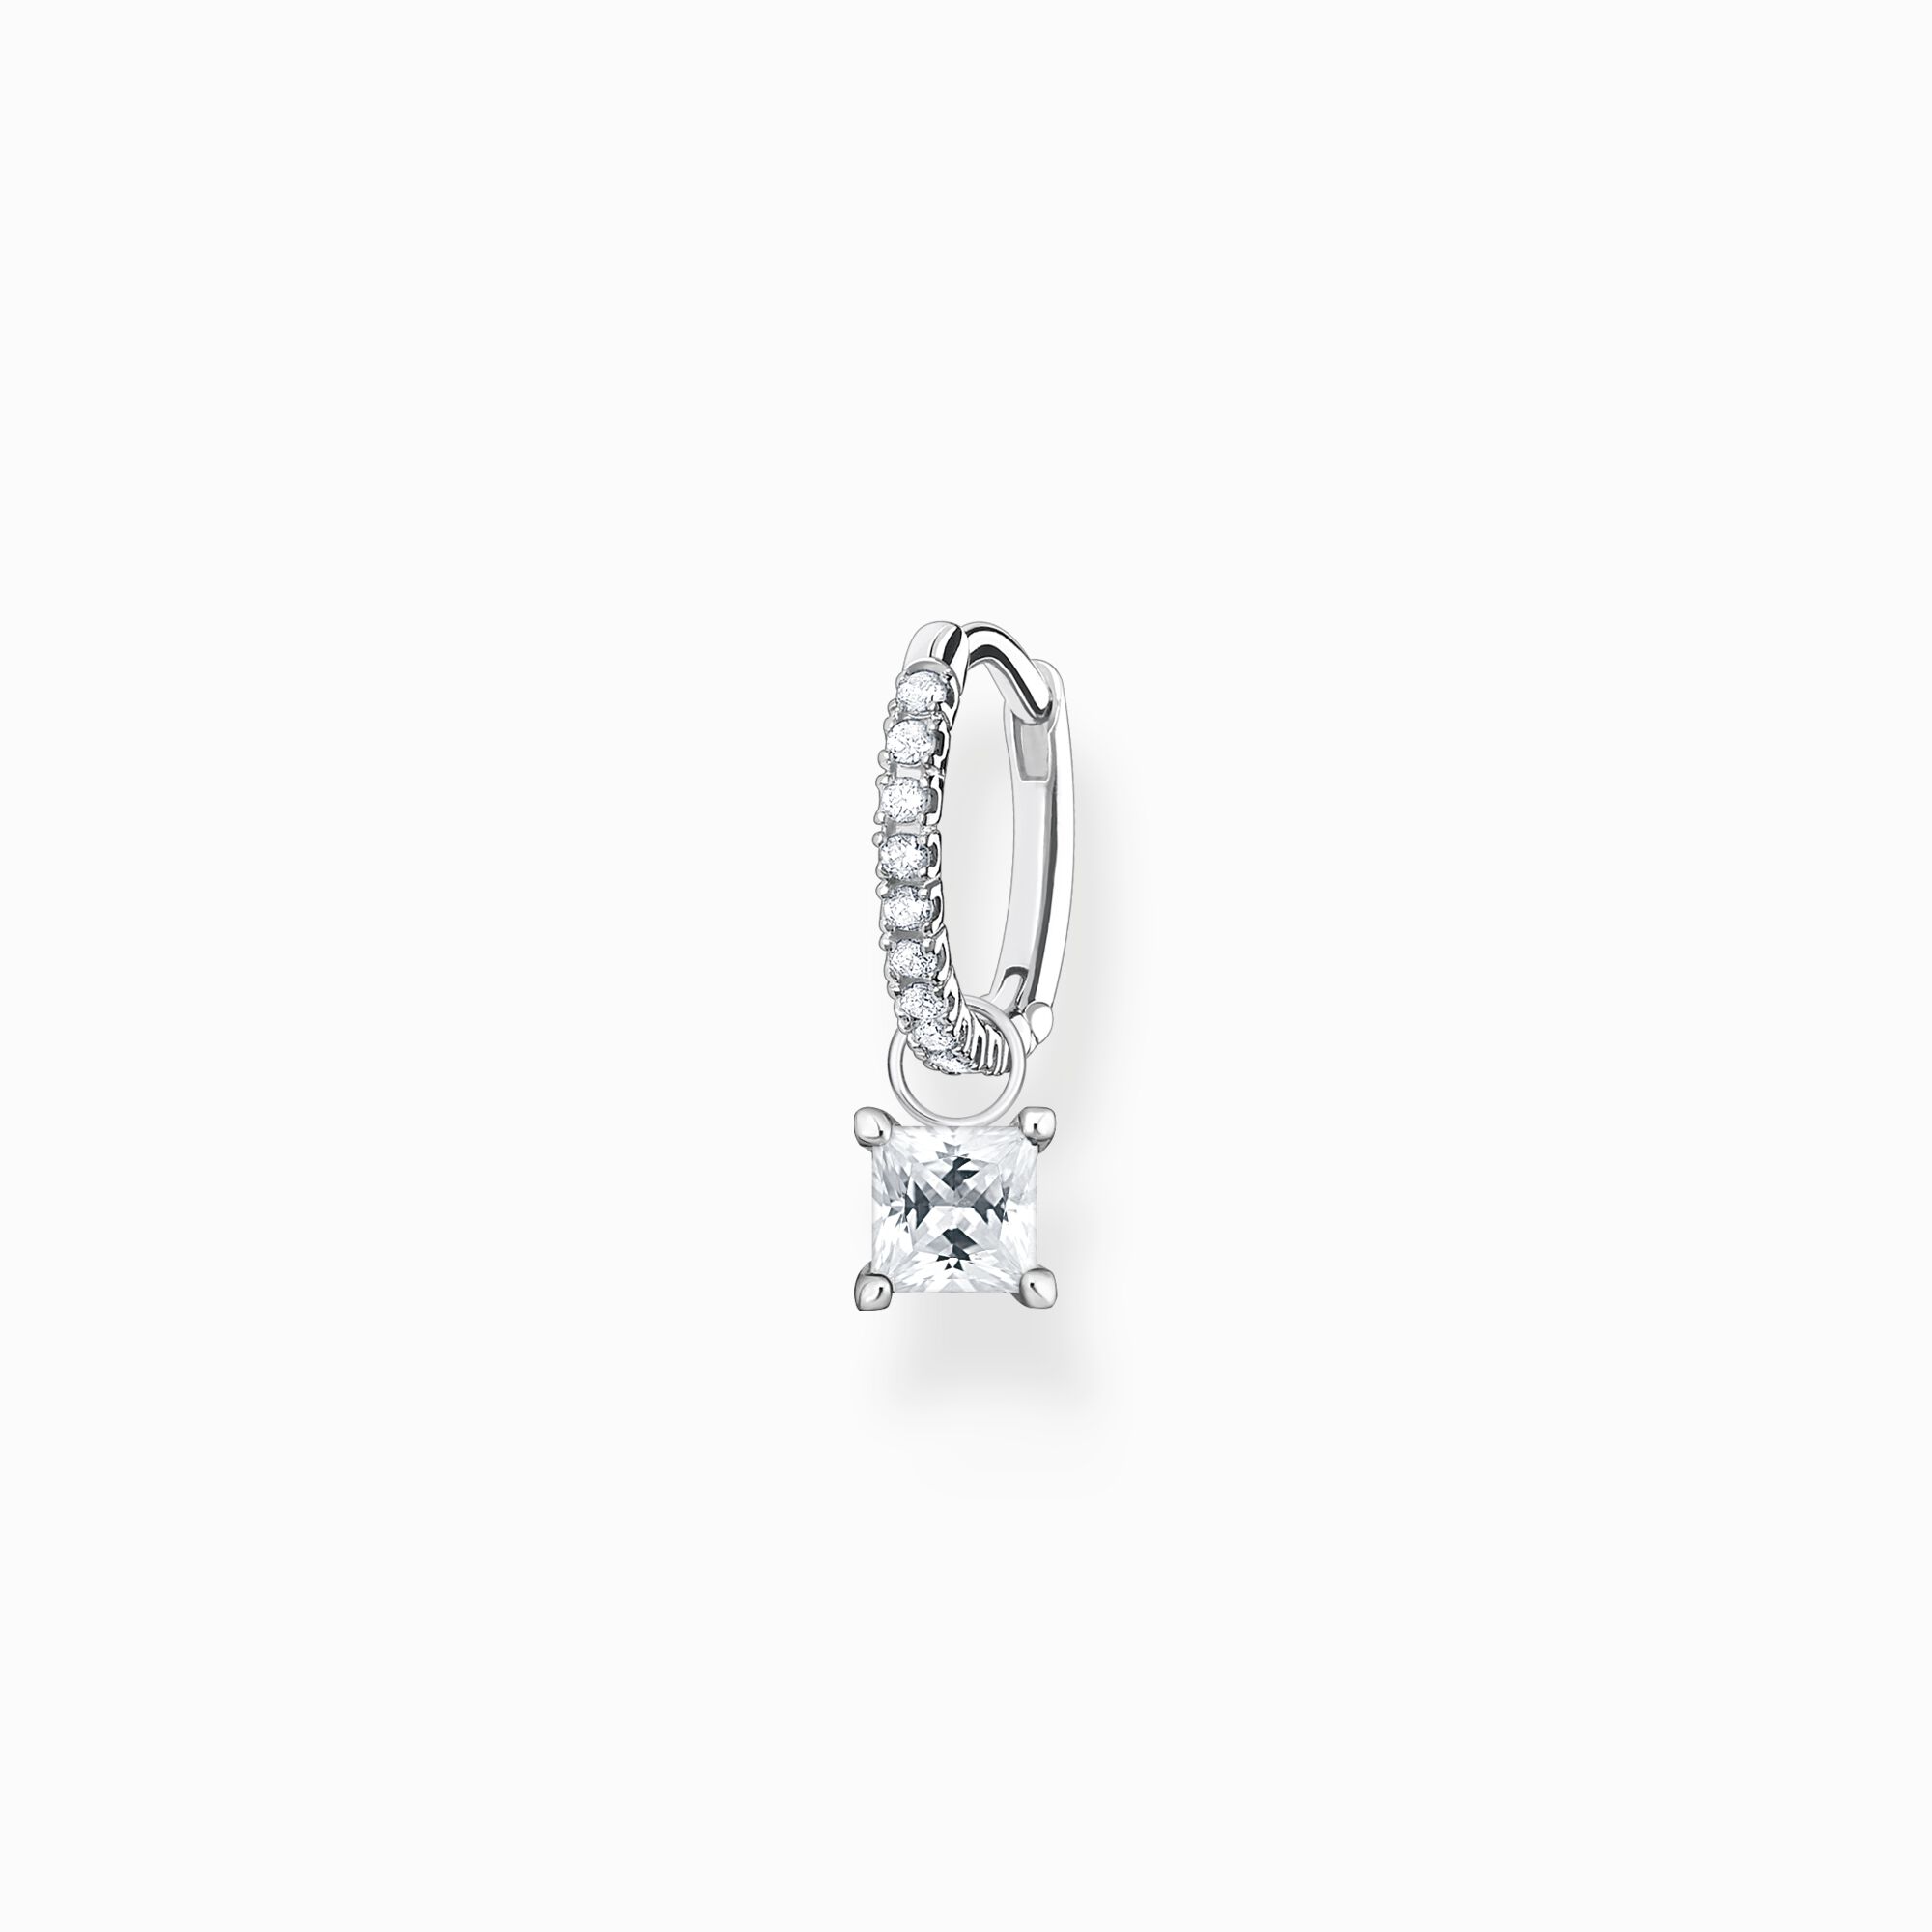 Aro con piedras blancas plata de la colección Charming Collection en la tienda online de THOMAS SABO